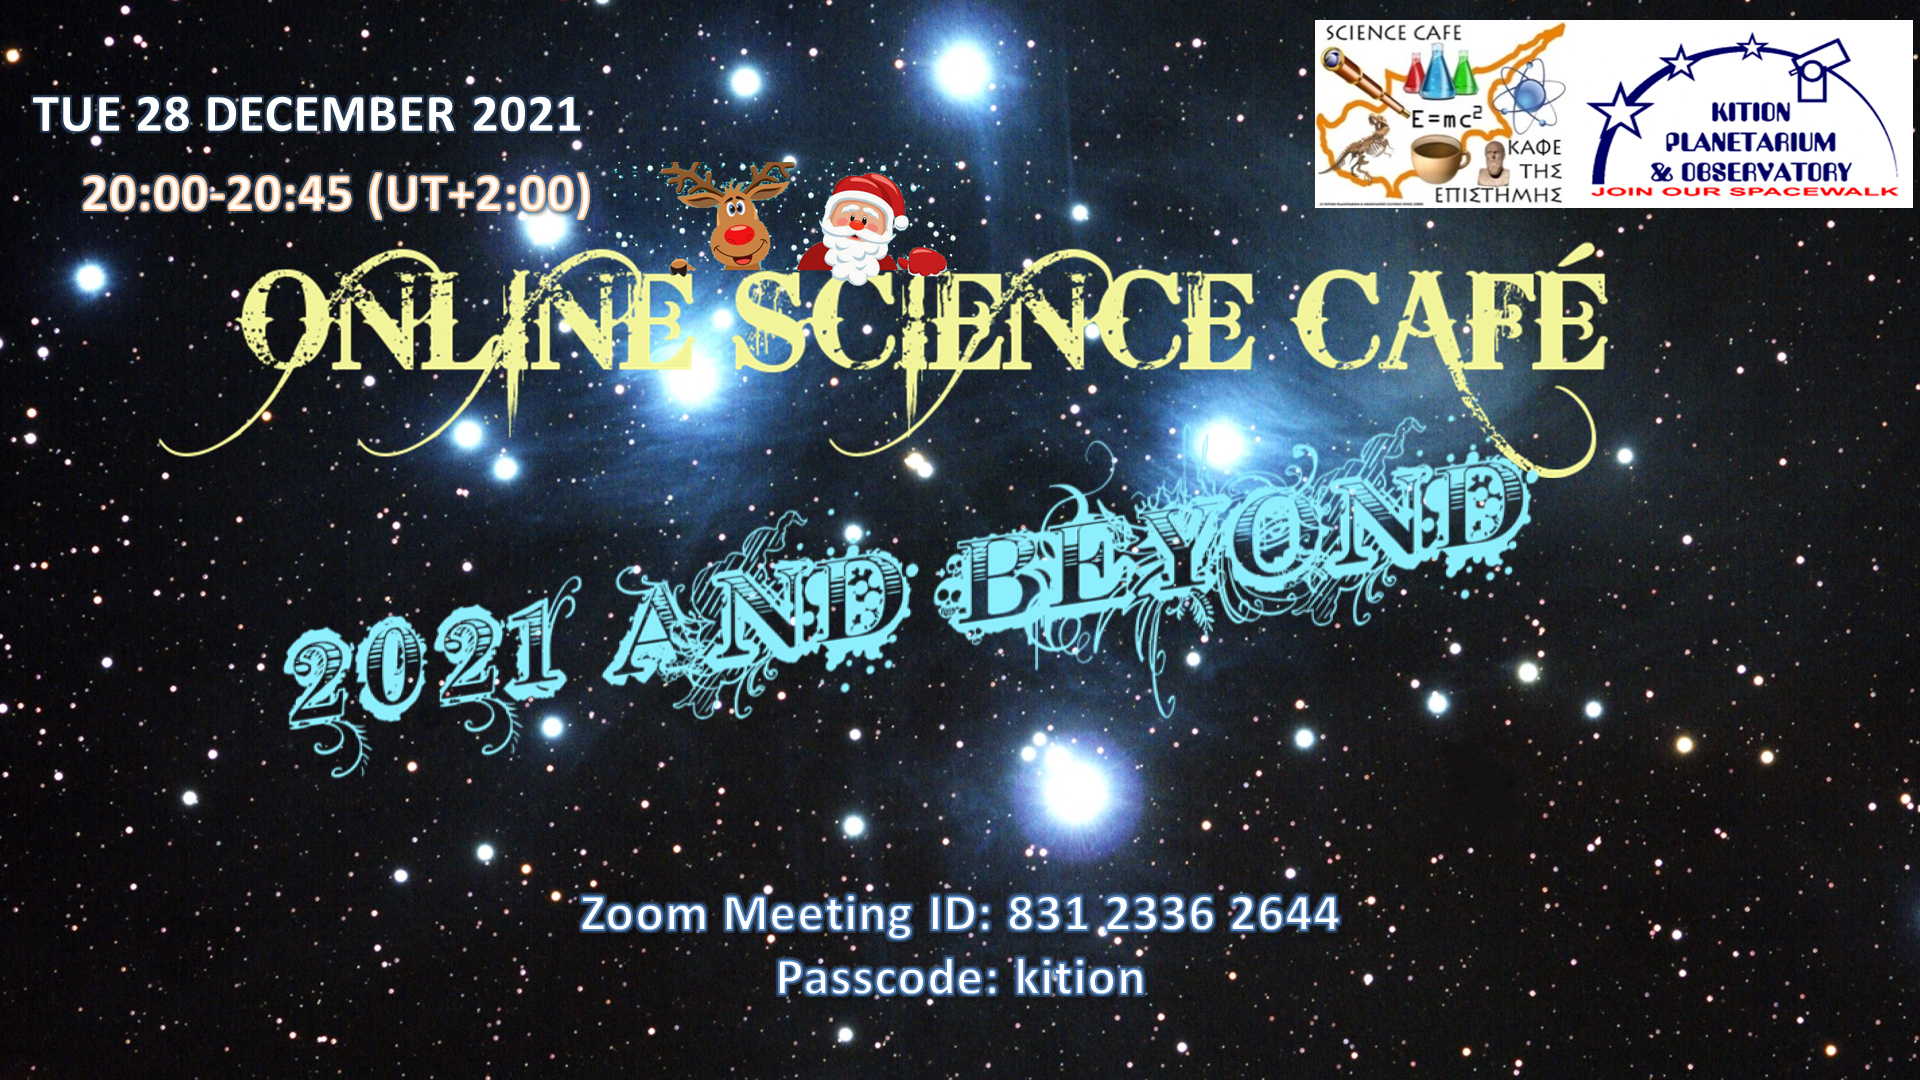 KITION SCIENCE CAFE 28 December 2021